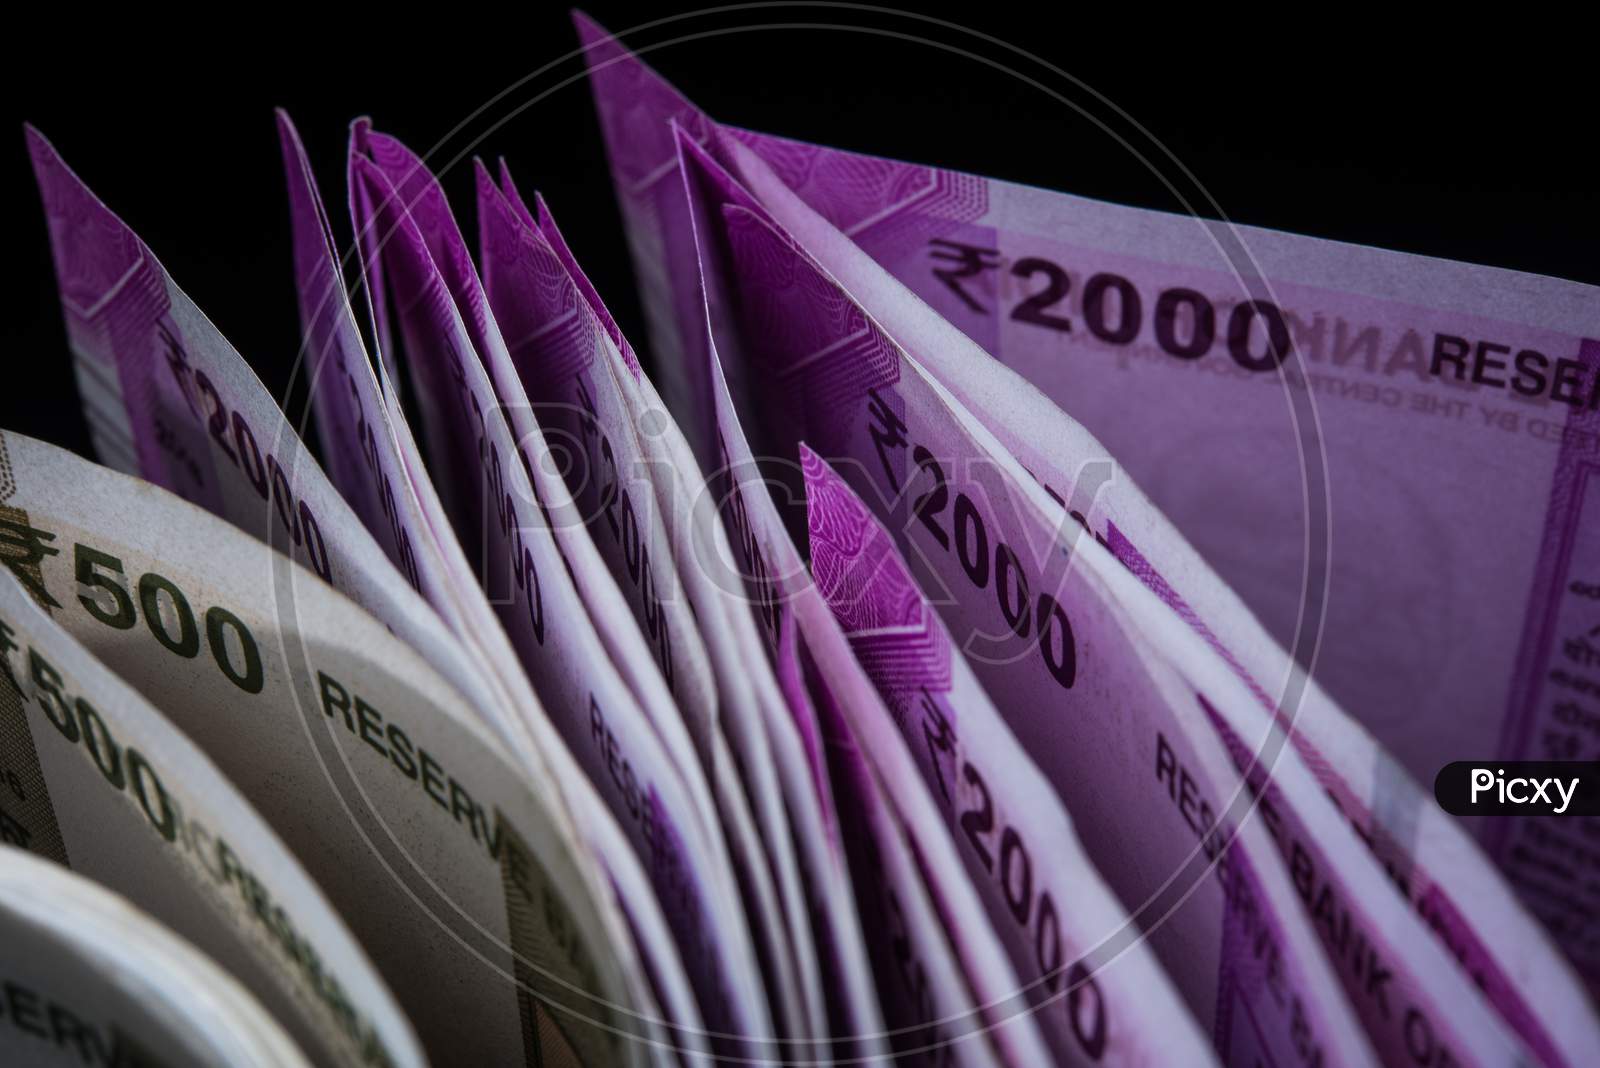 Indian Rupees Notes closeup